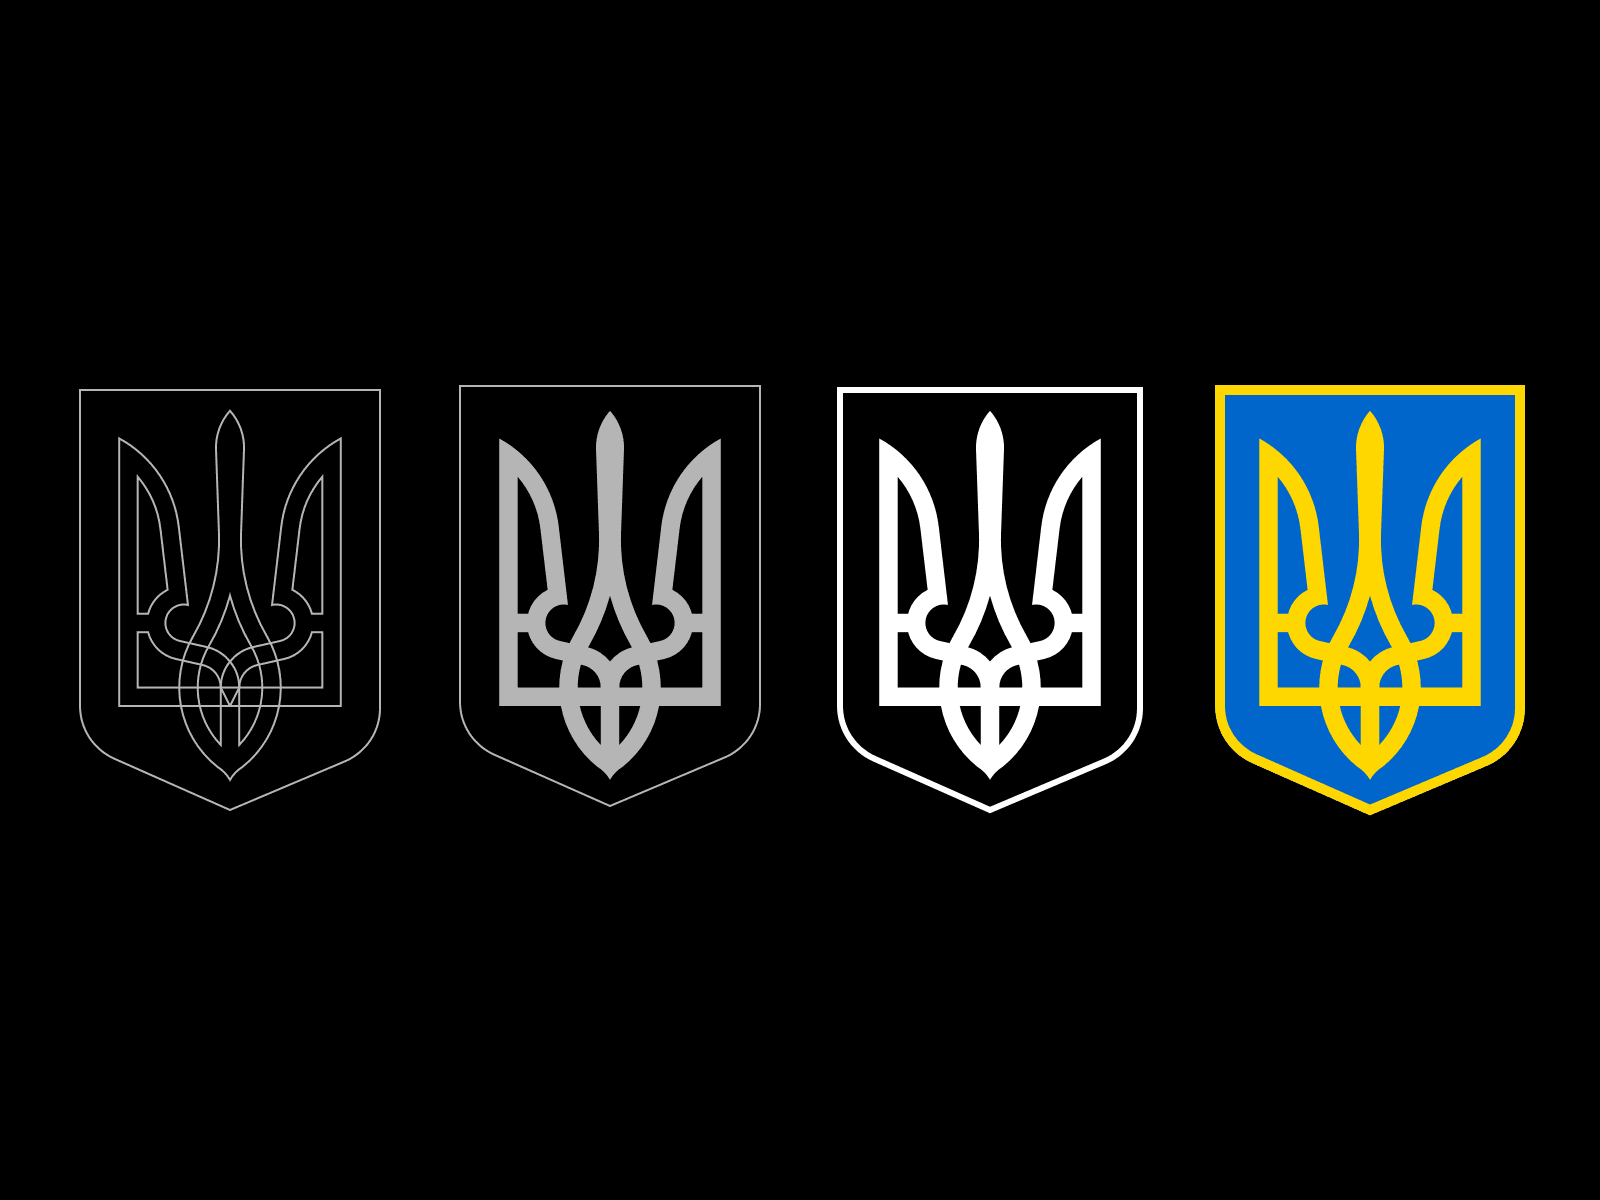 Ukraine Coat of Arms Sketch Resource